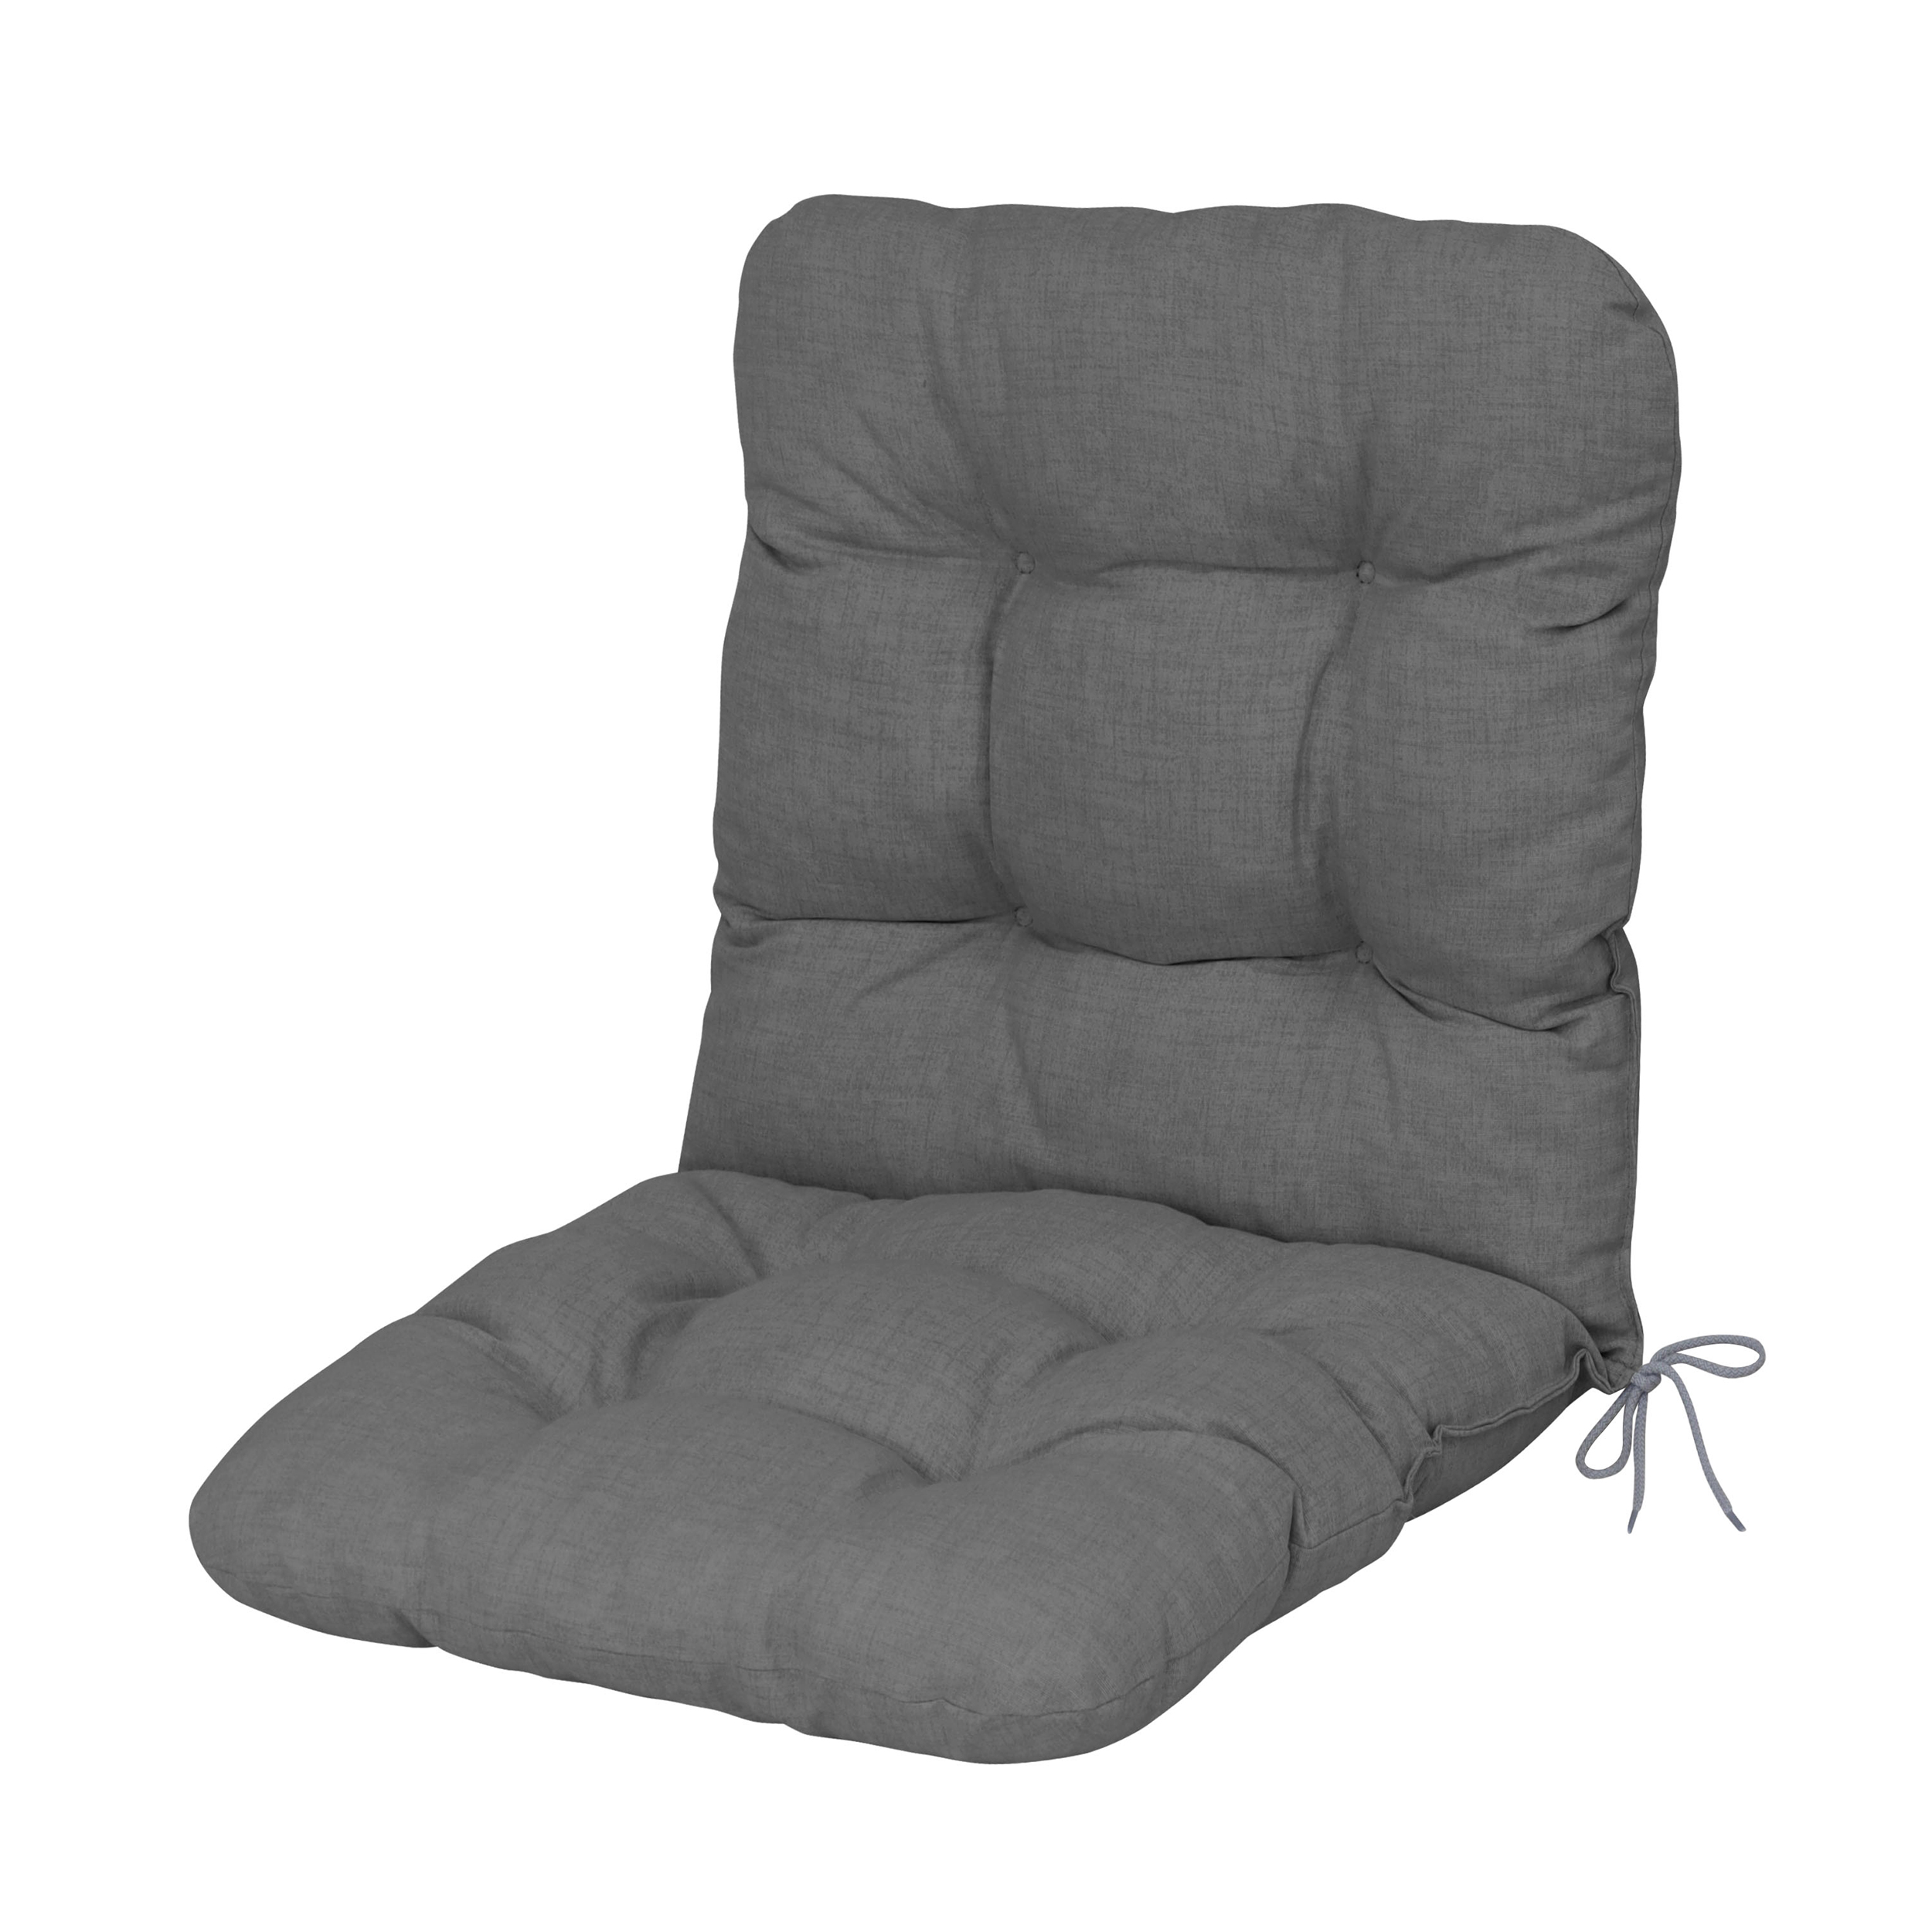 DILUMA Niedriglehner Auflage Eleganza für Gartenstühle 100x50 cm Anthrazit 6 cm Starke Premium Stuhlauflage mit Komfortschaumkern Sitzauflage Made in EU